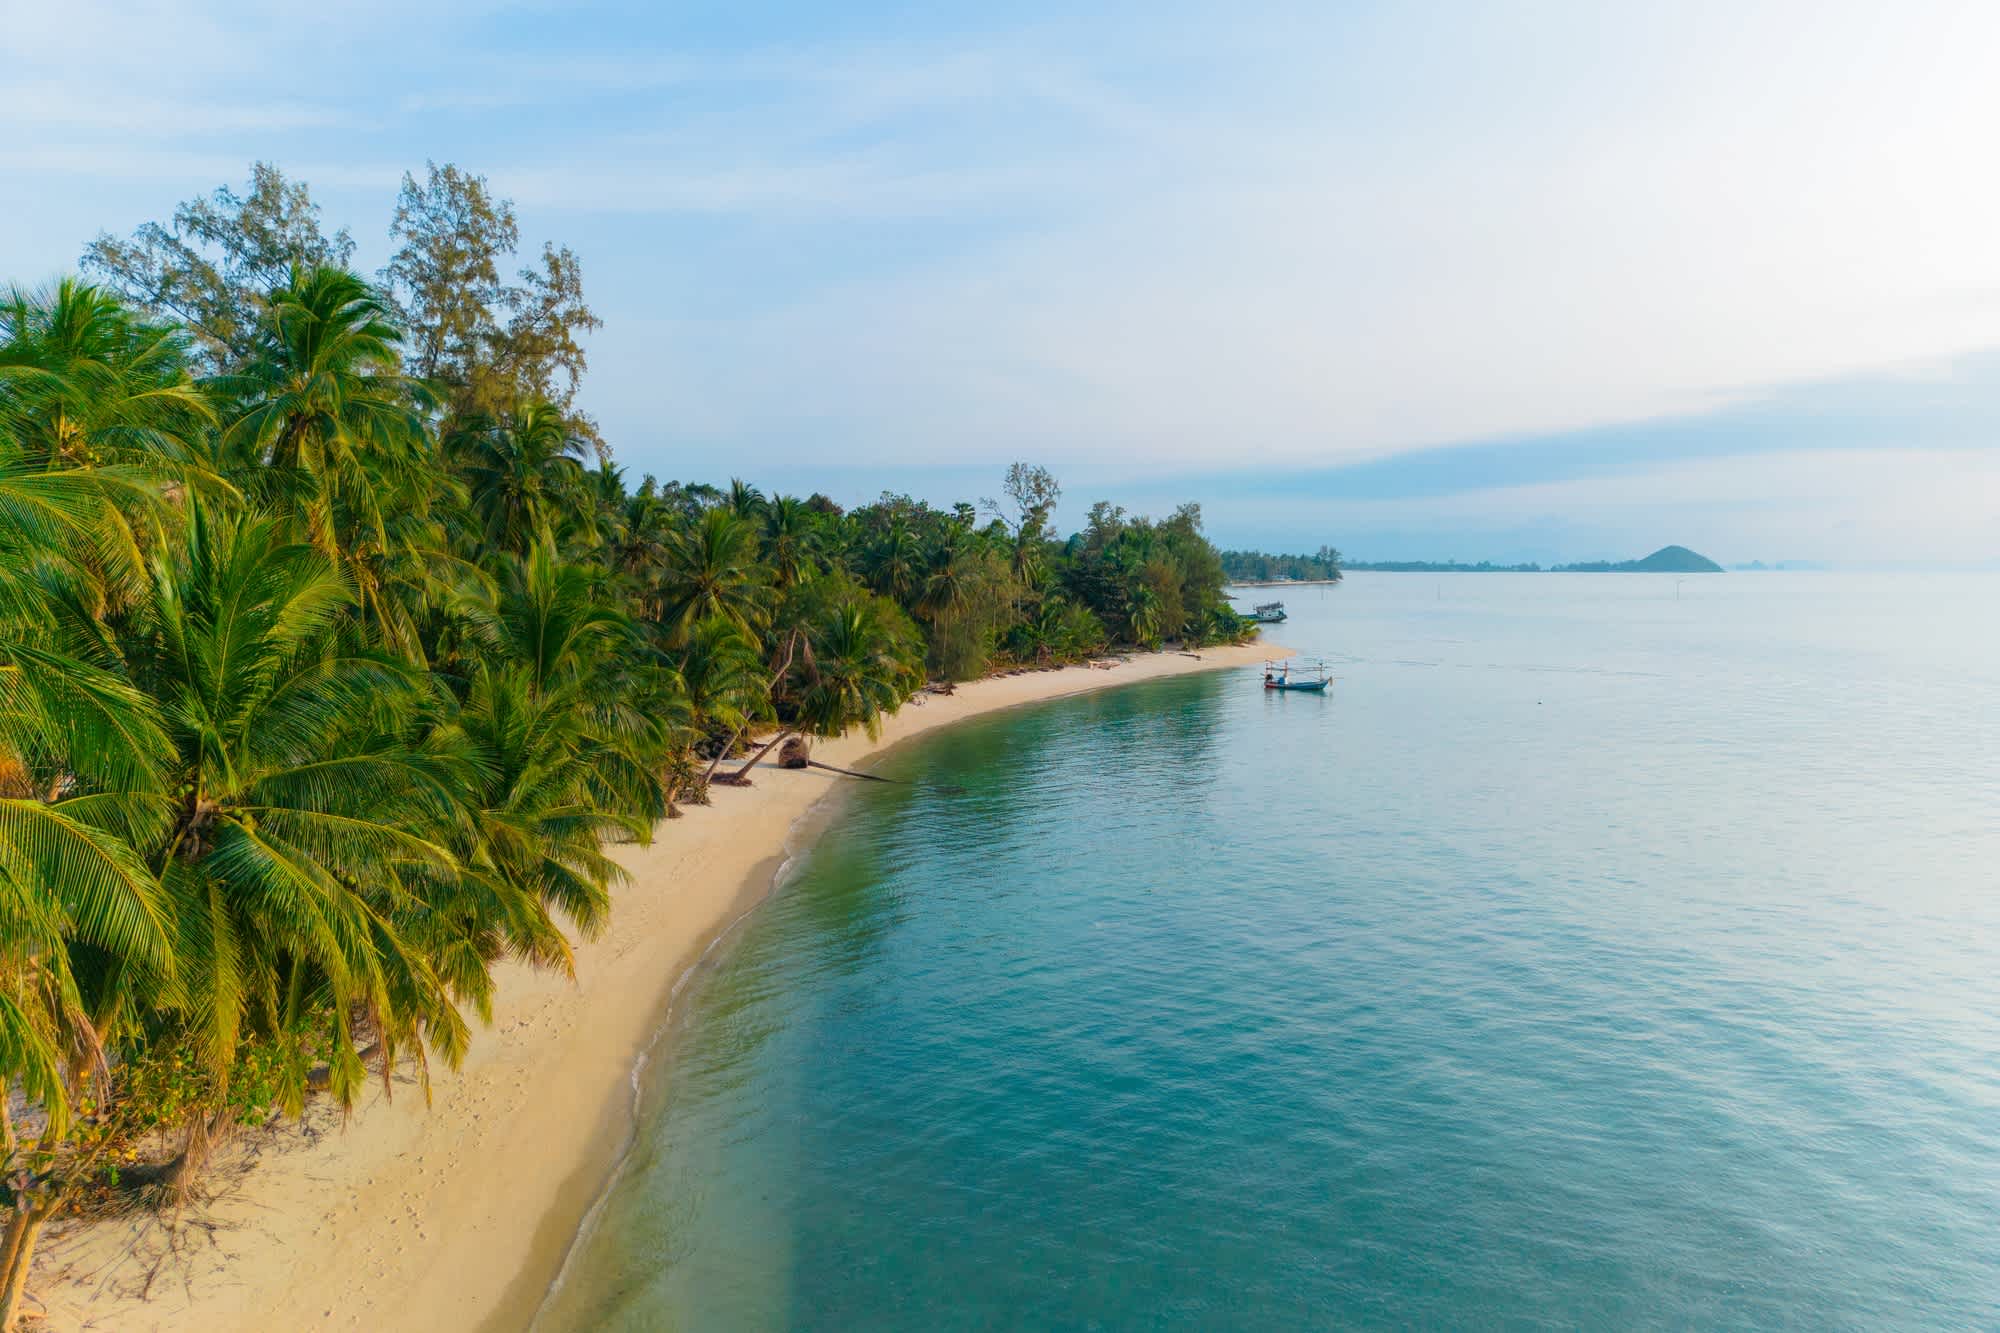 Vue aérienne de la plage idyllique de l'île de Koh Tan, Koh Samui, Thaïlande.